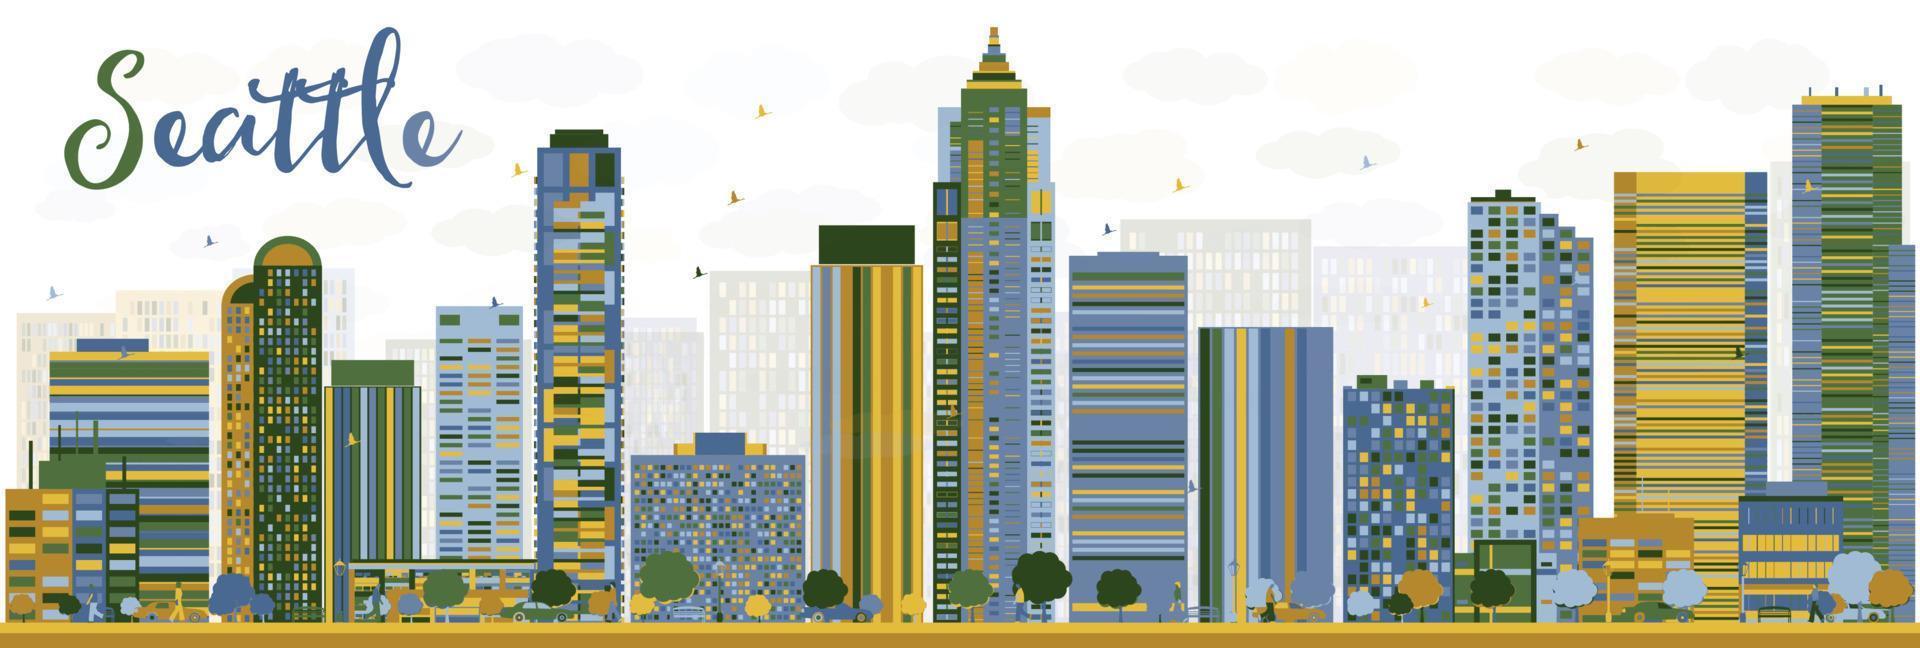 abstrakt seattle stadssilhuett med färg byggnader vektor